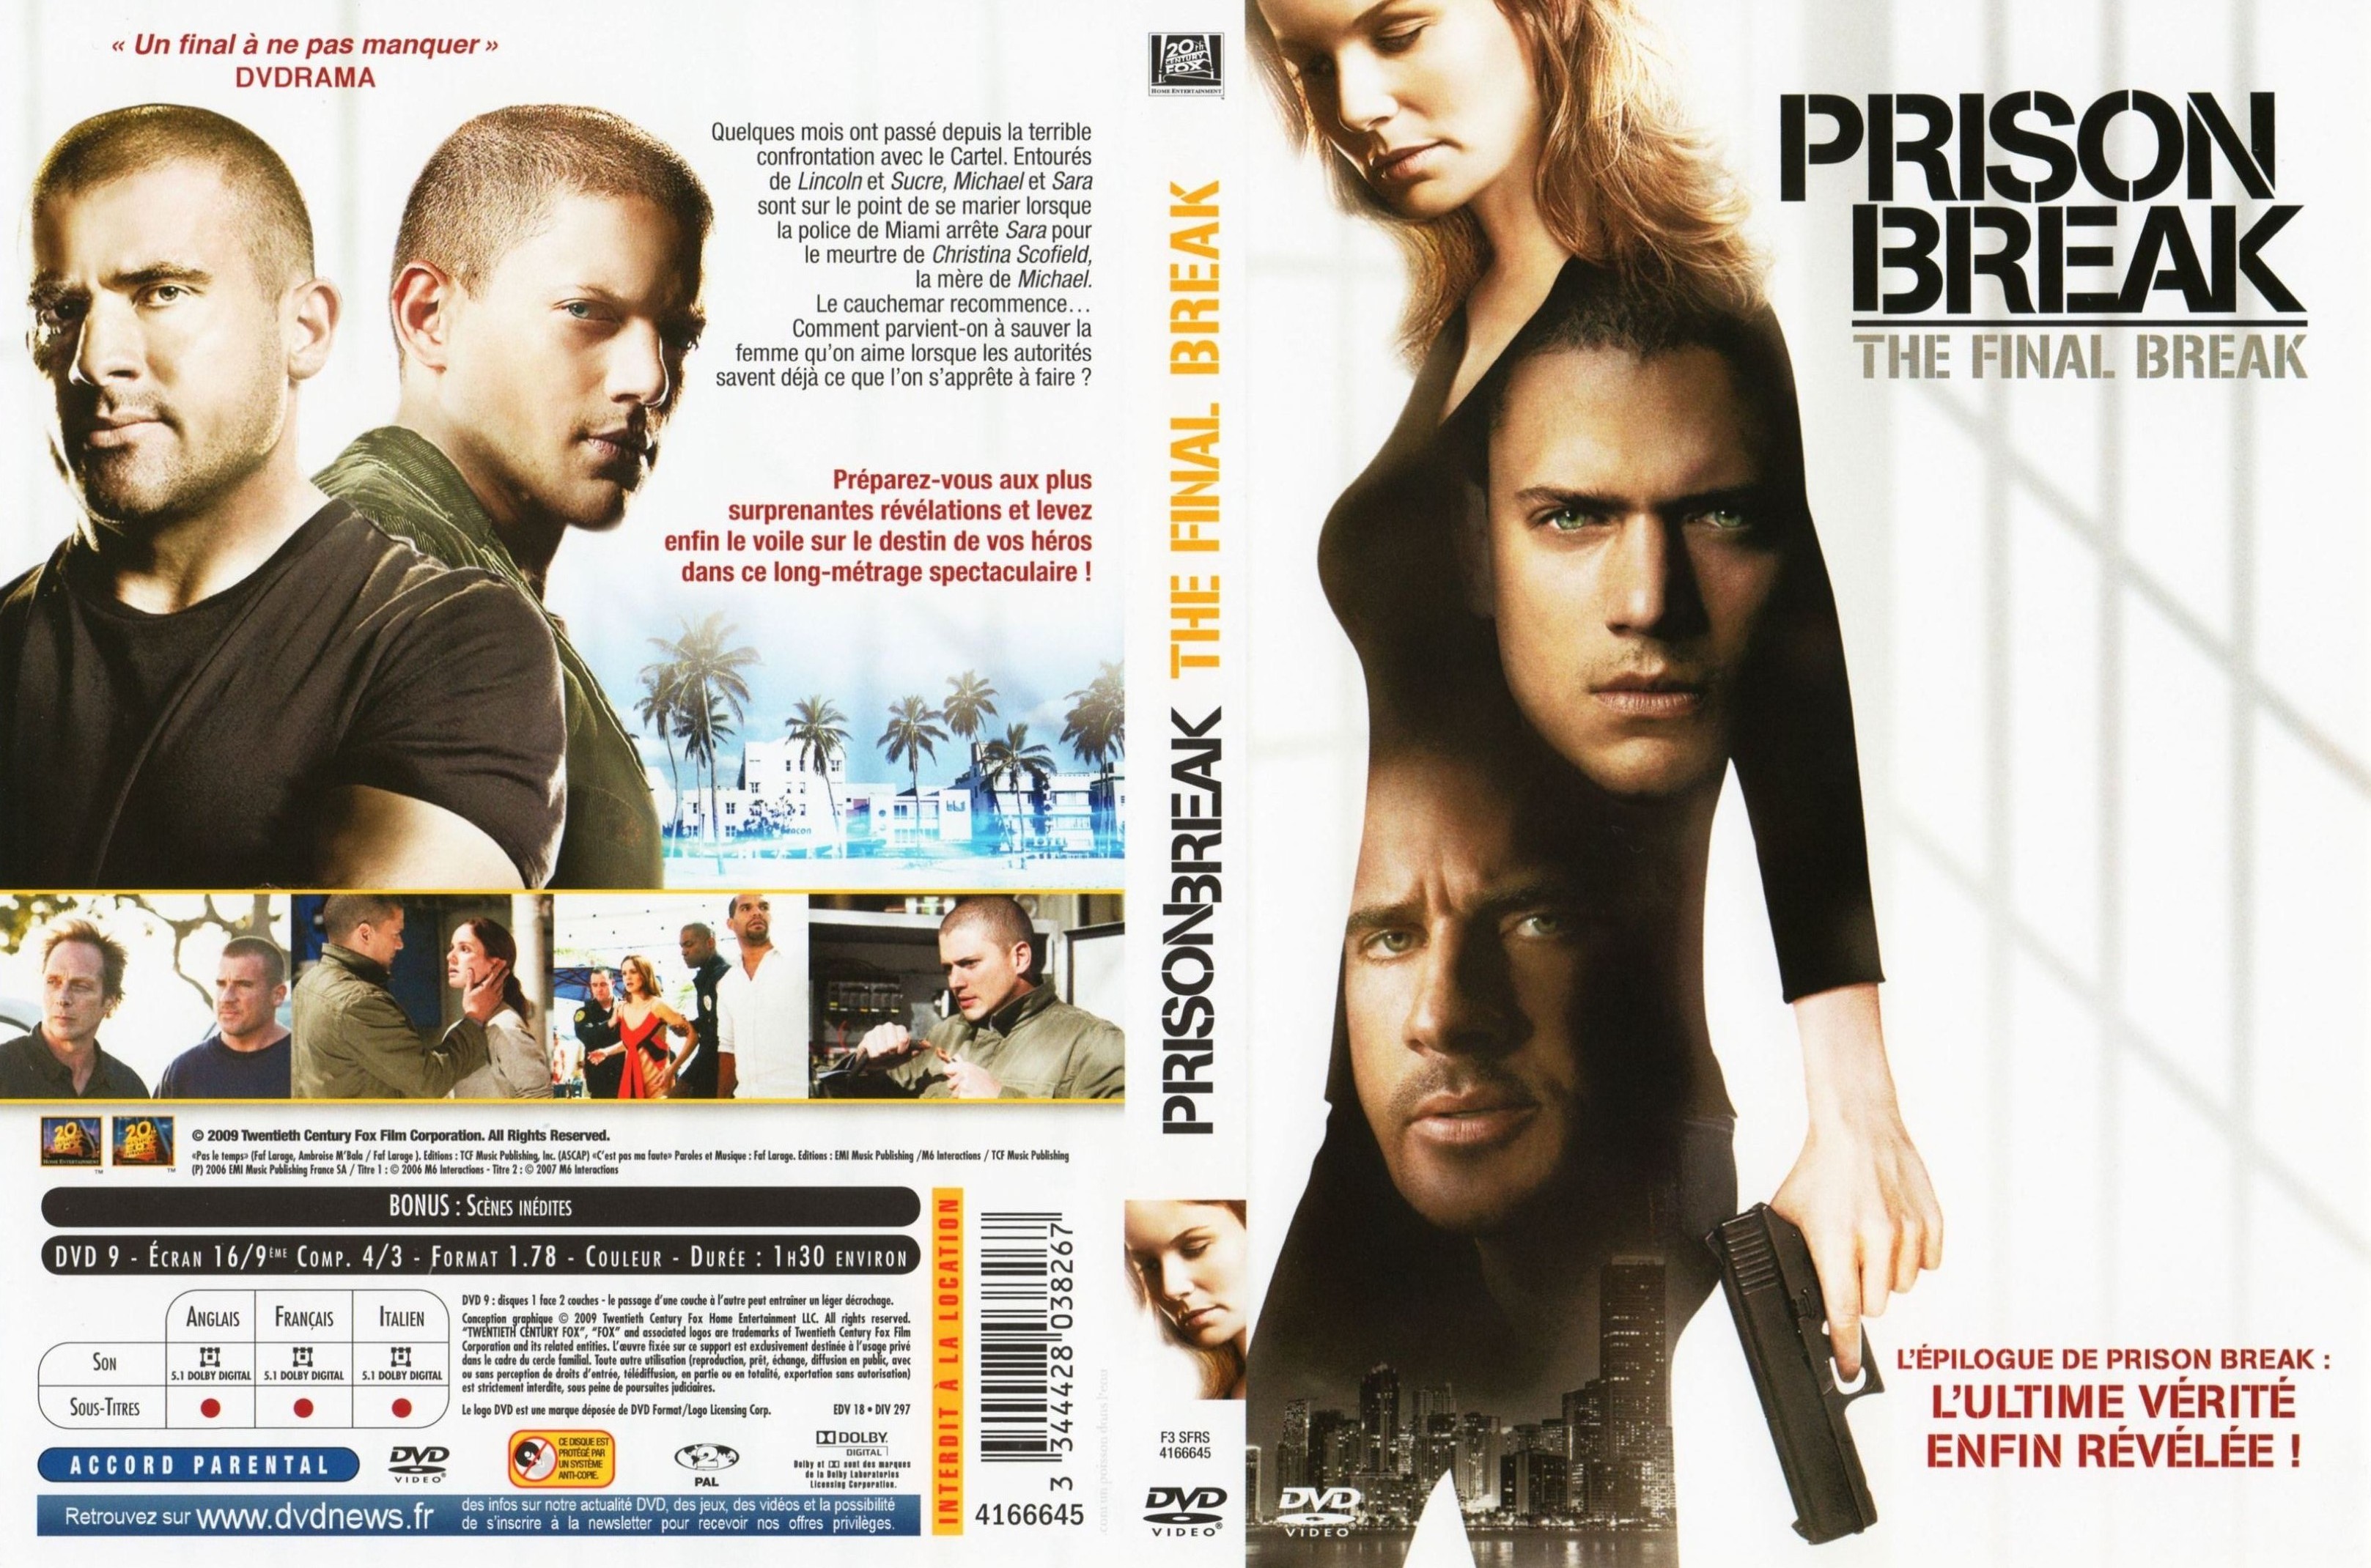 Jaquette DVD Prison break - The final break v2